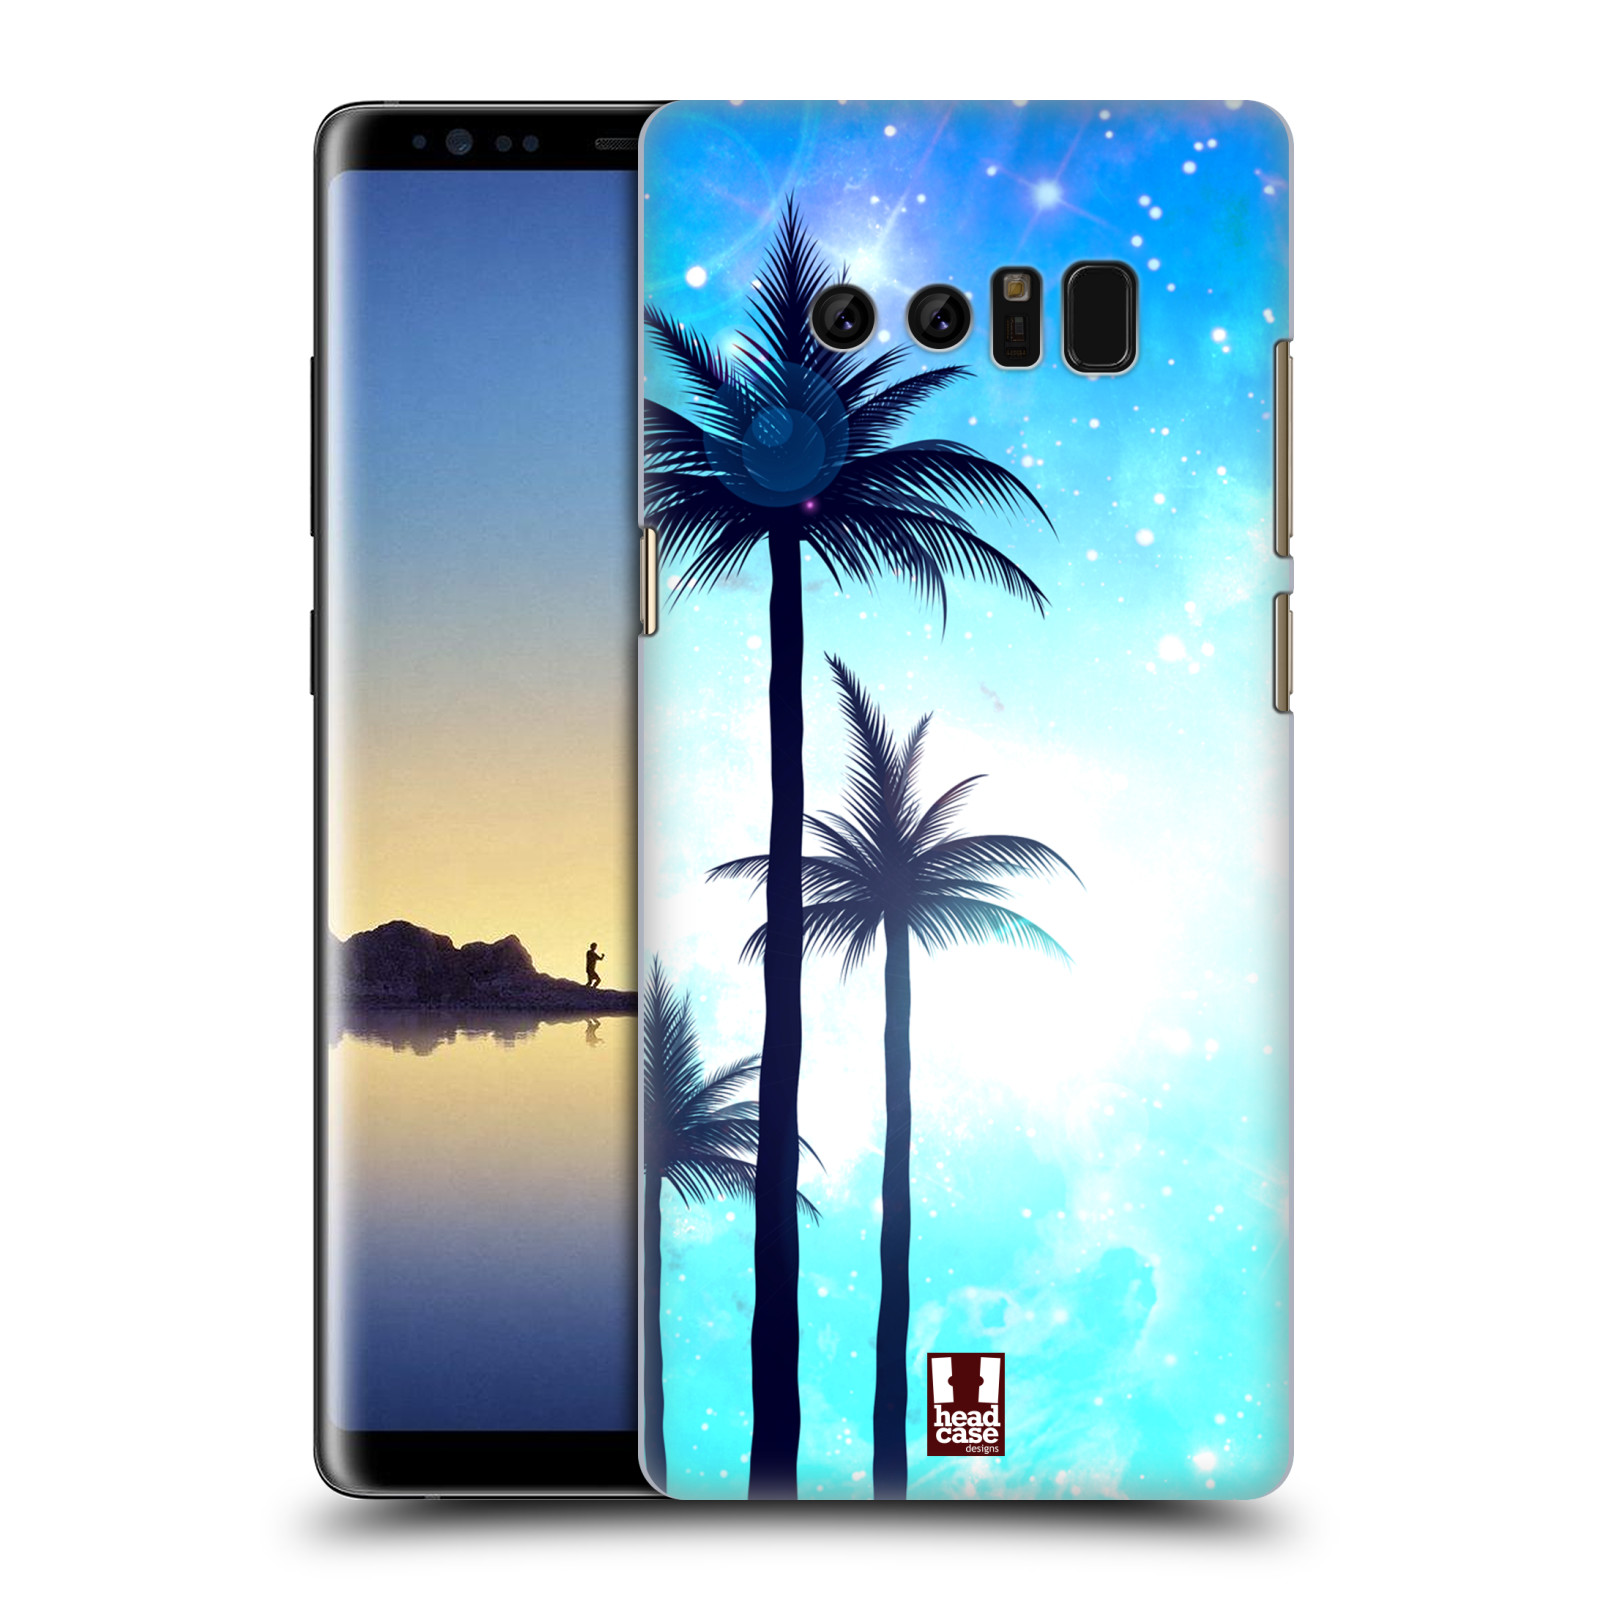 HEAD CASE plastový obal na mobil Samsung Galaxy Note 8 vzor Kreslený motiv silueta moře a palmy MODRÁ